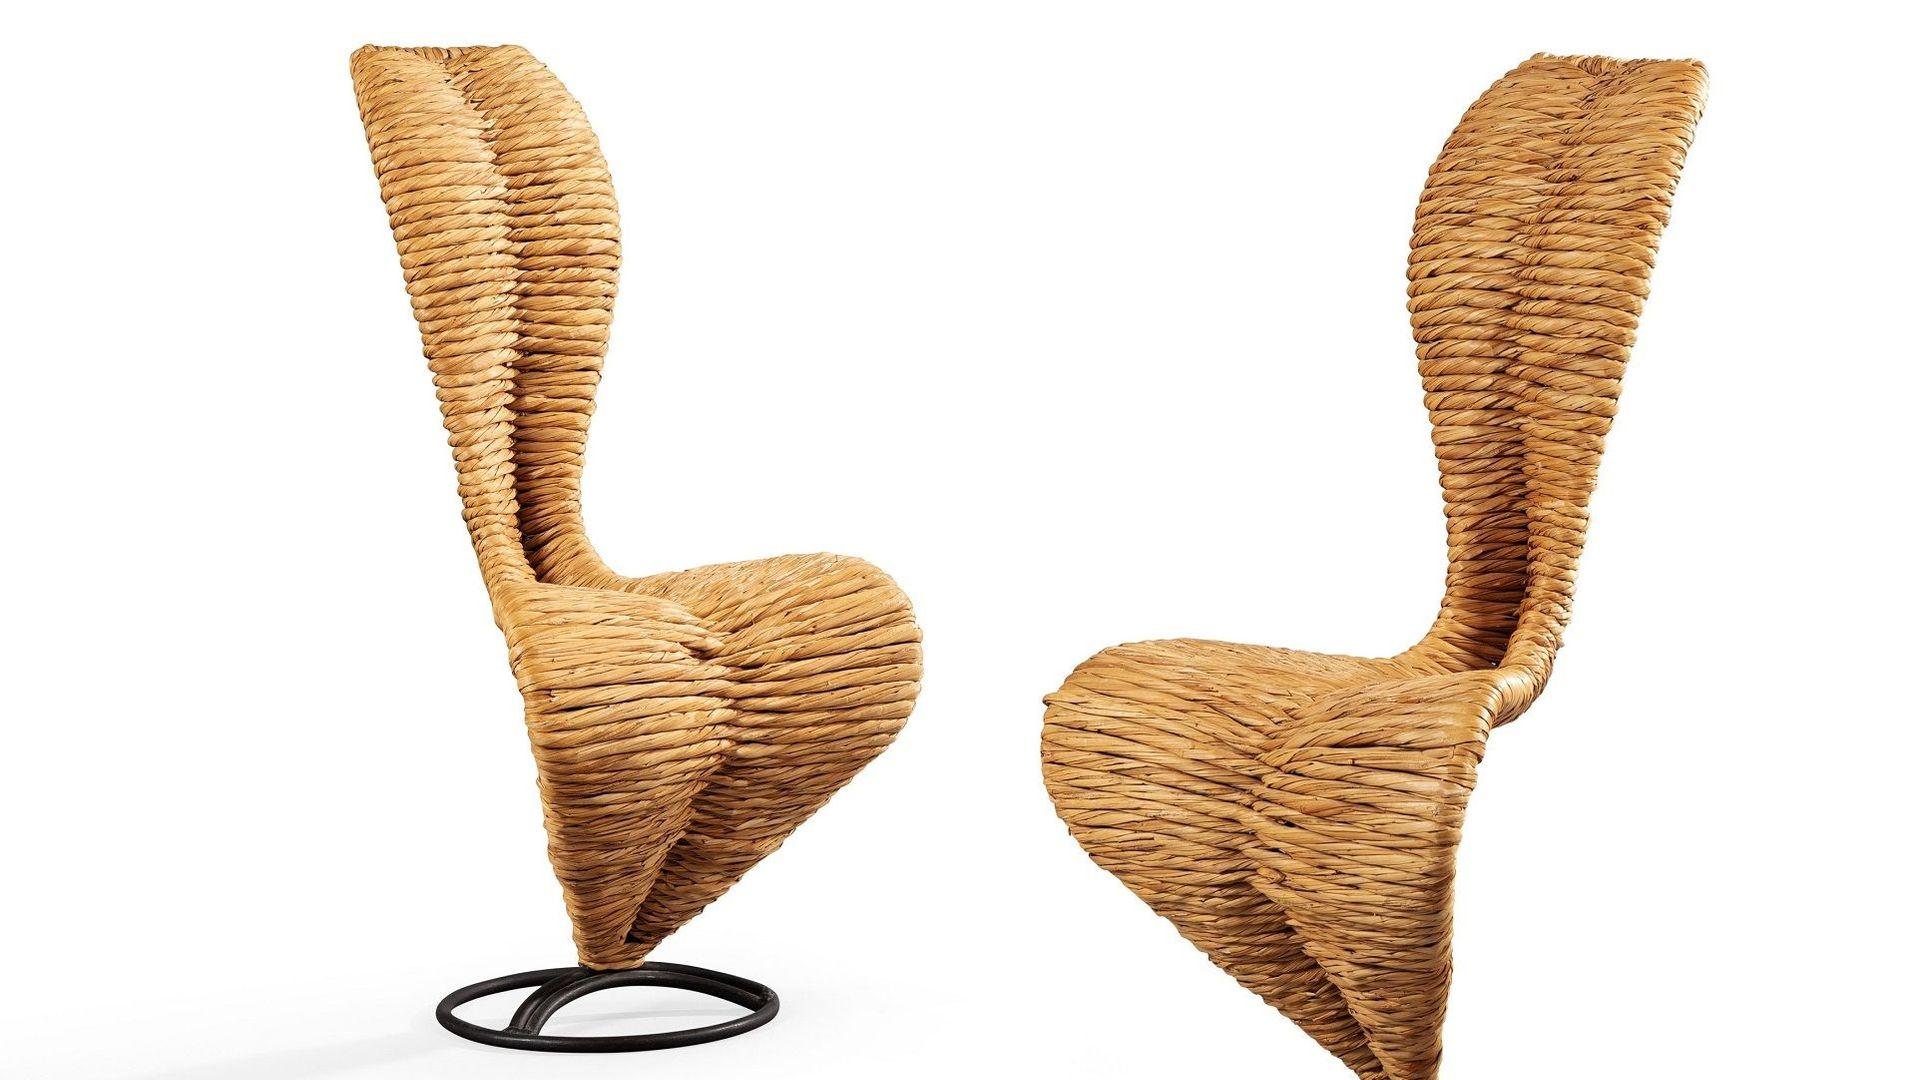 Tom Dixon, Paire de chaises S, Modèle créé en 1991, estimation : 7.000-10.000€.